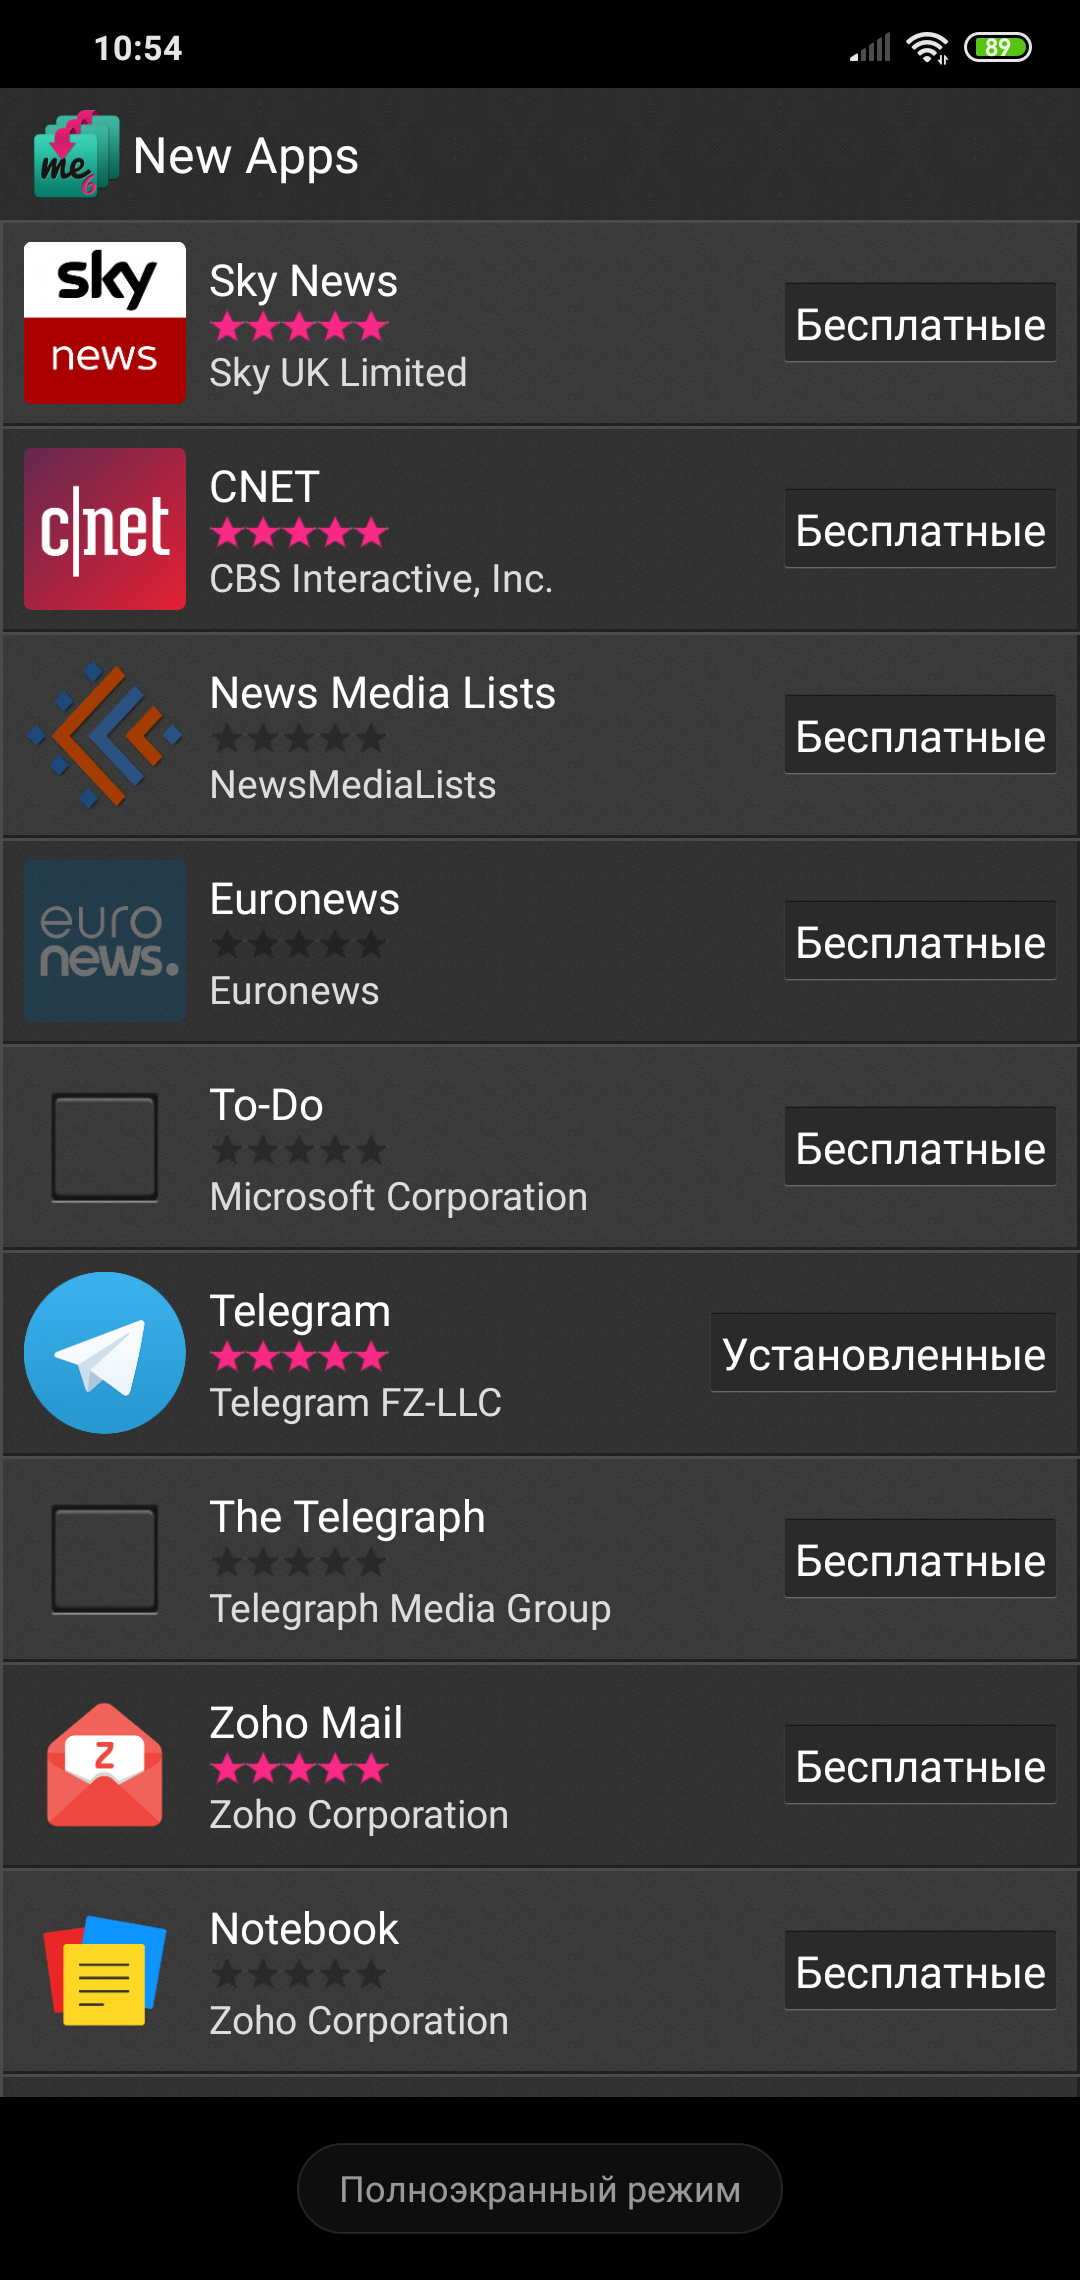 Установить телеграмм на андроид бесплатно на русском полную версию без регистрации фото 100